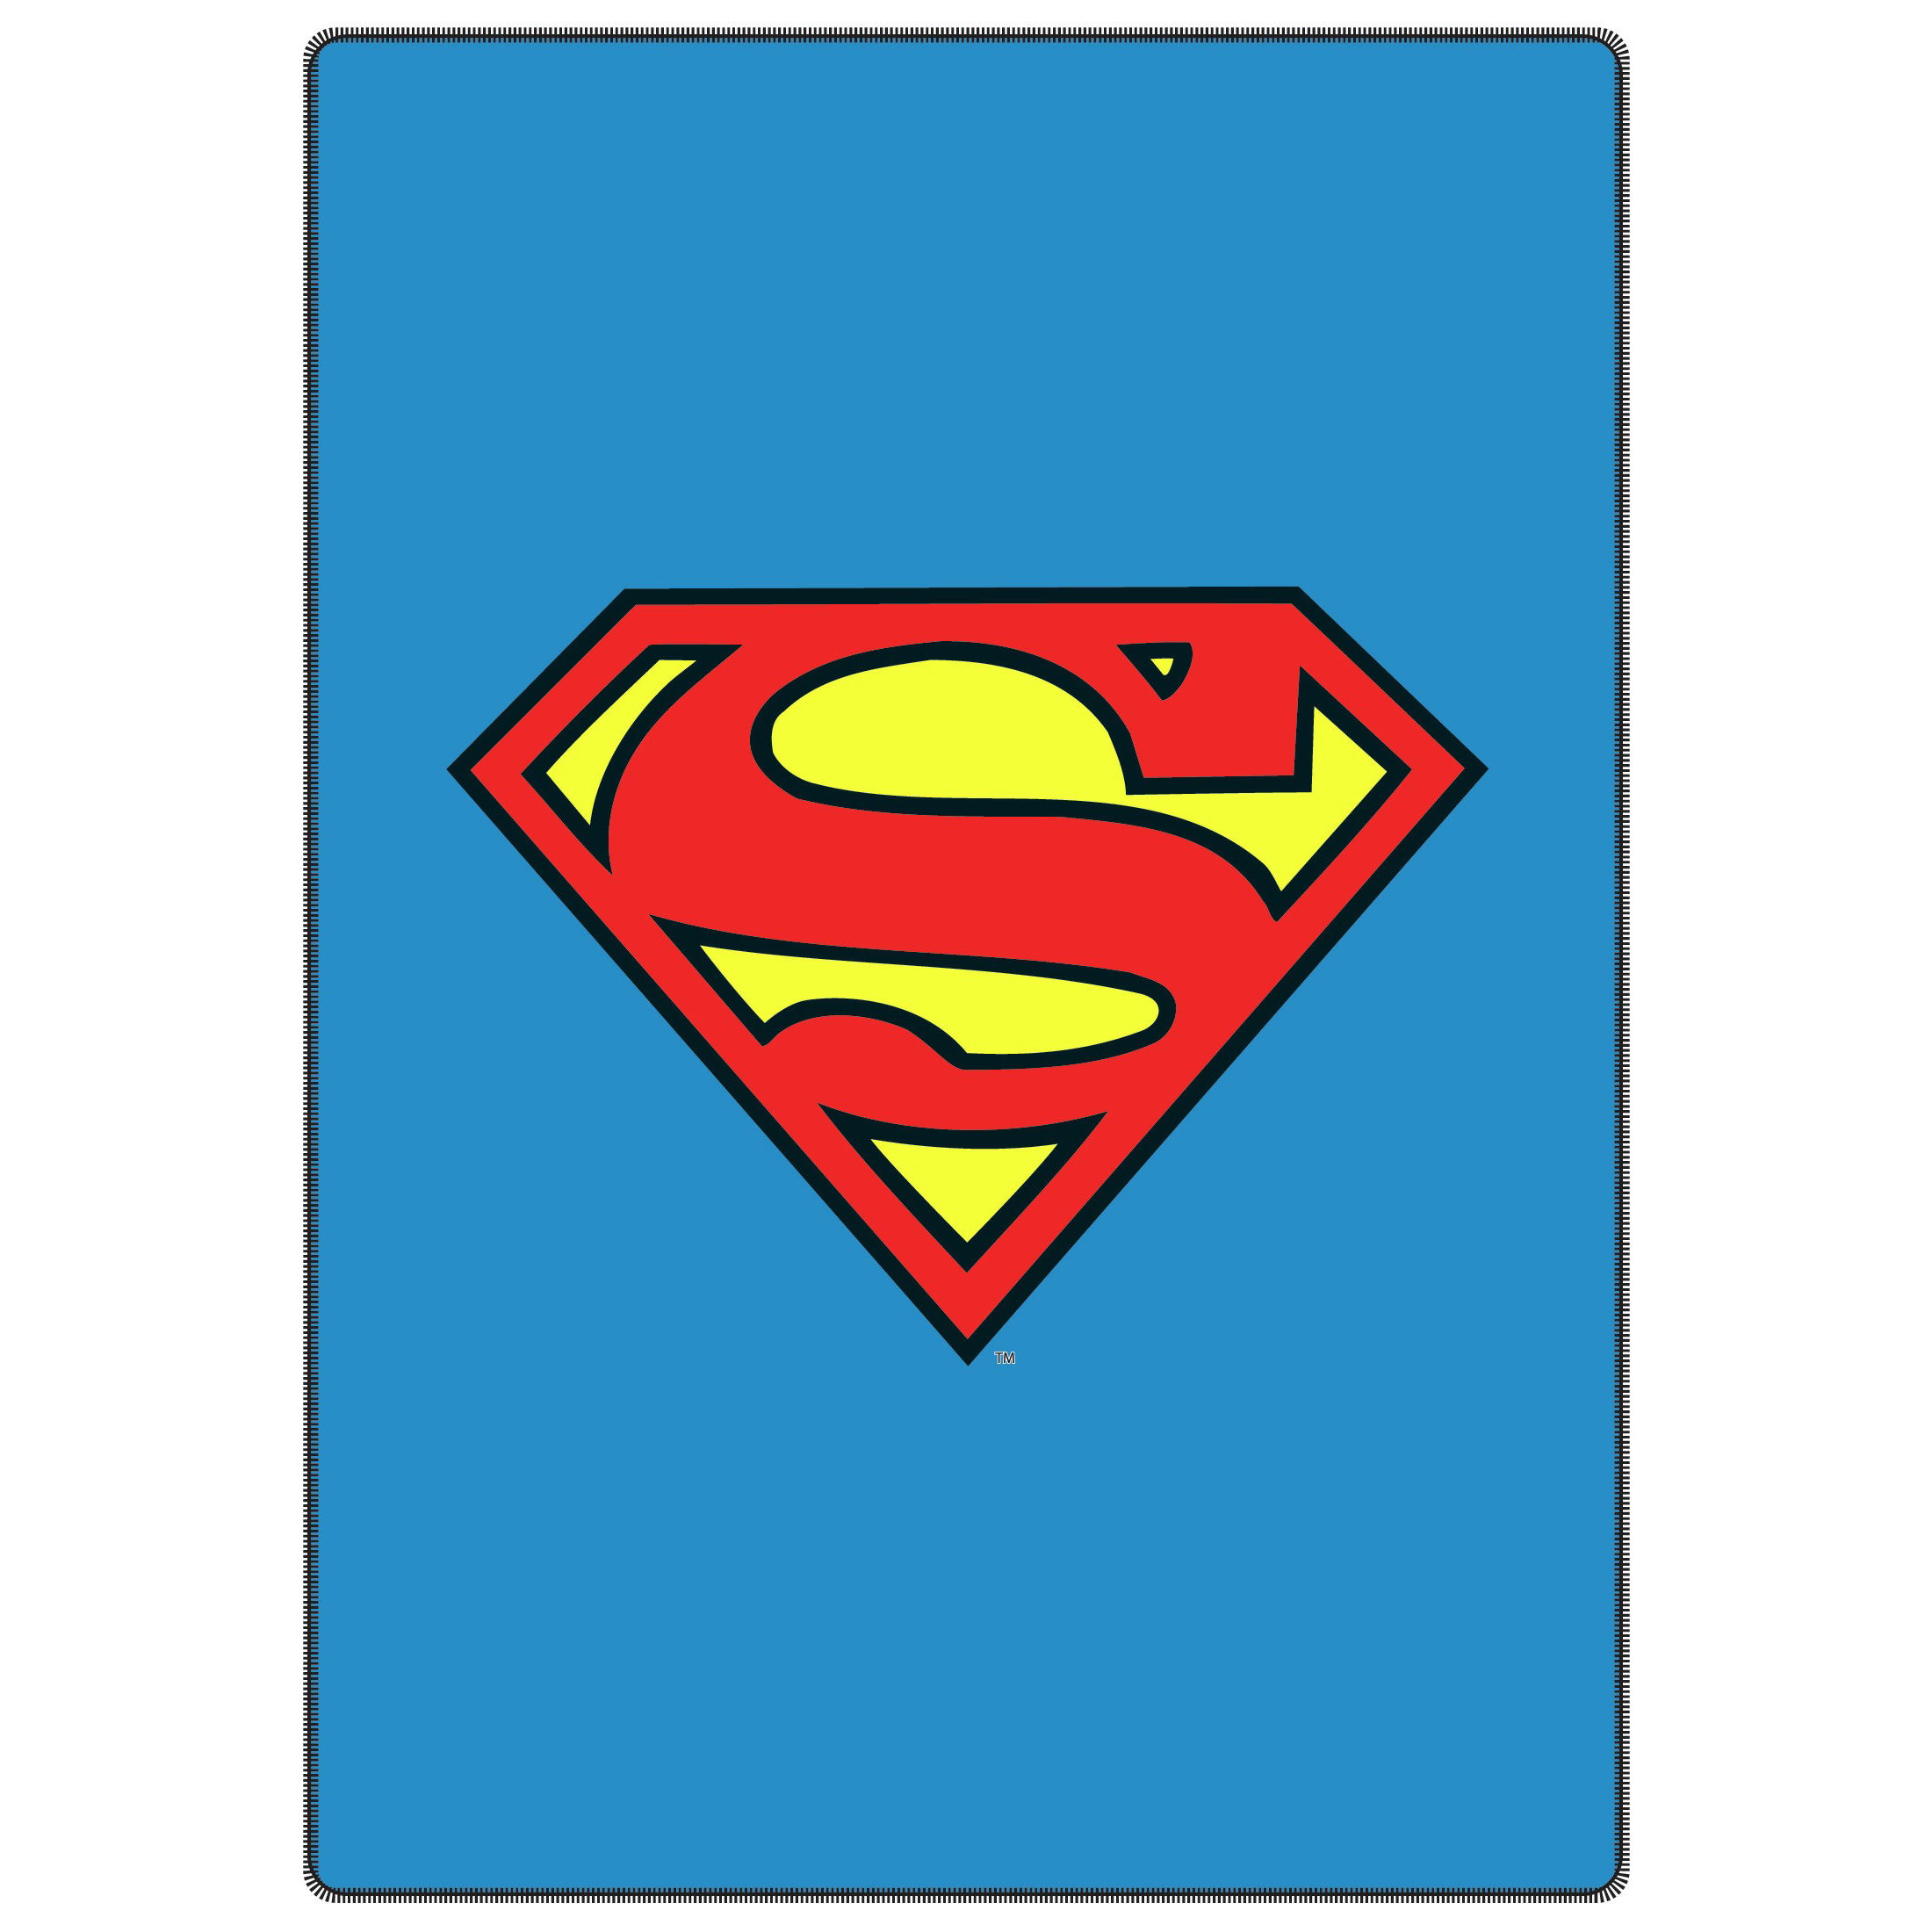 superman emblem clip art - photo #36